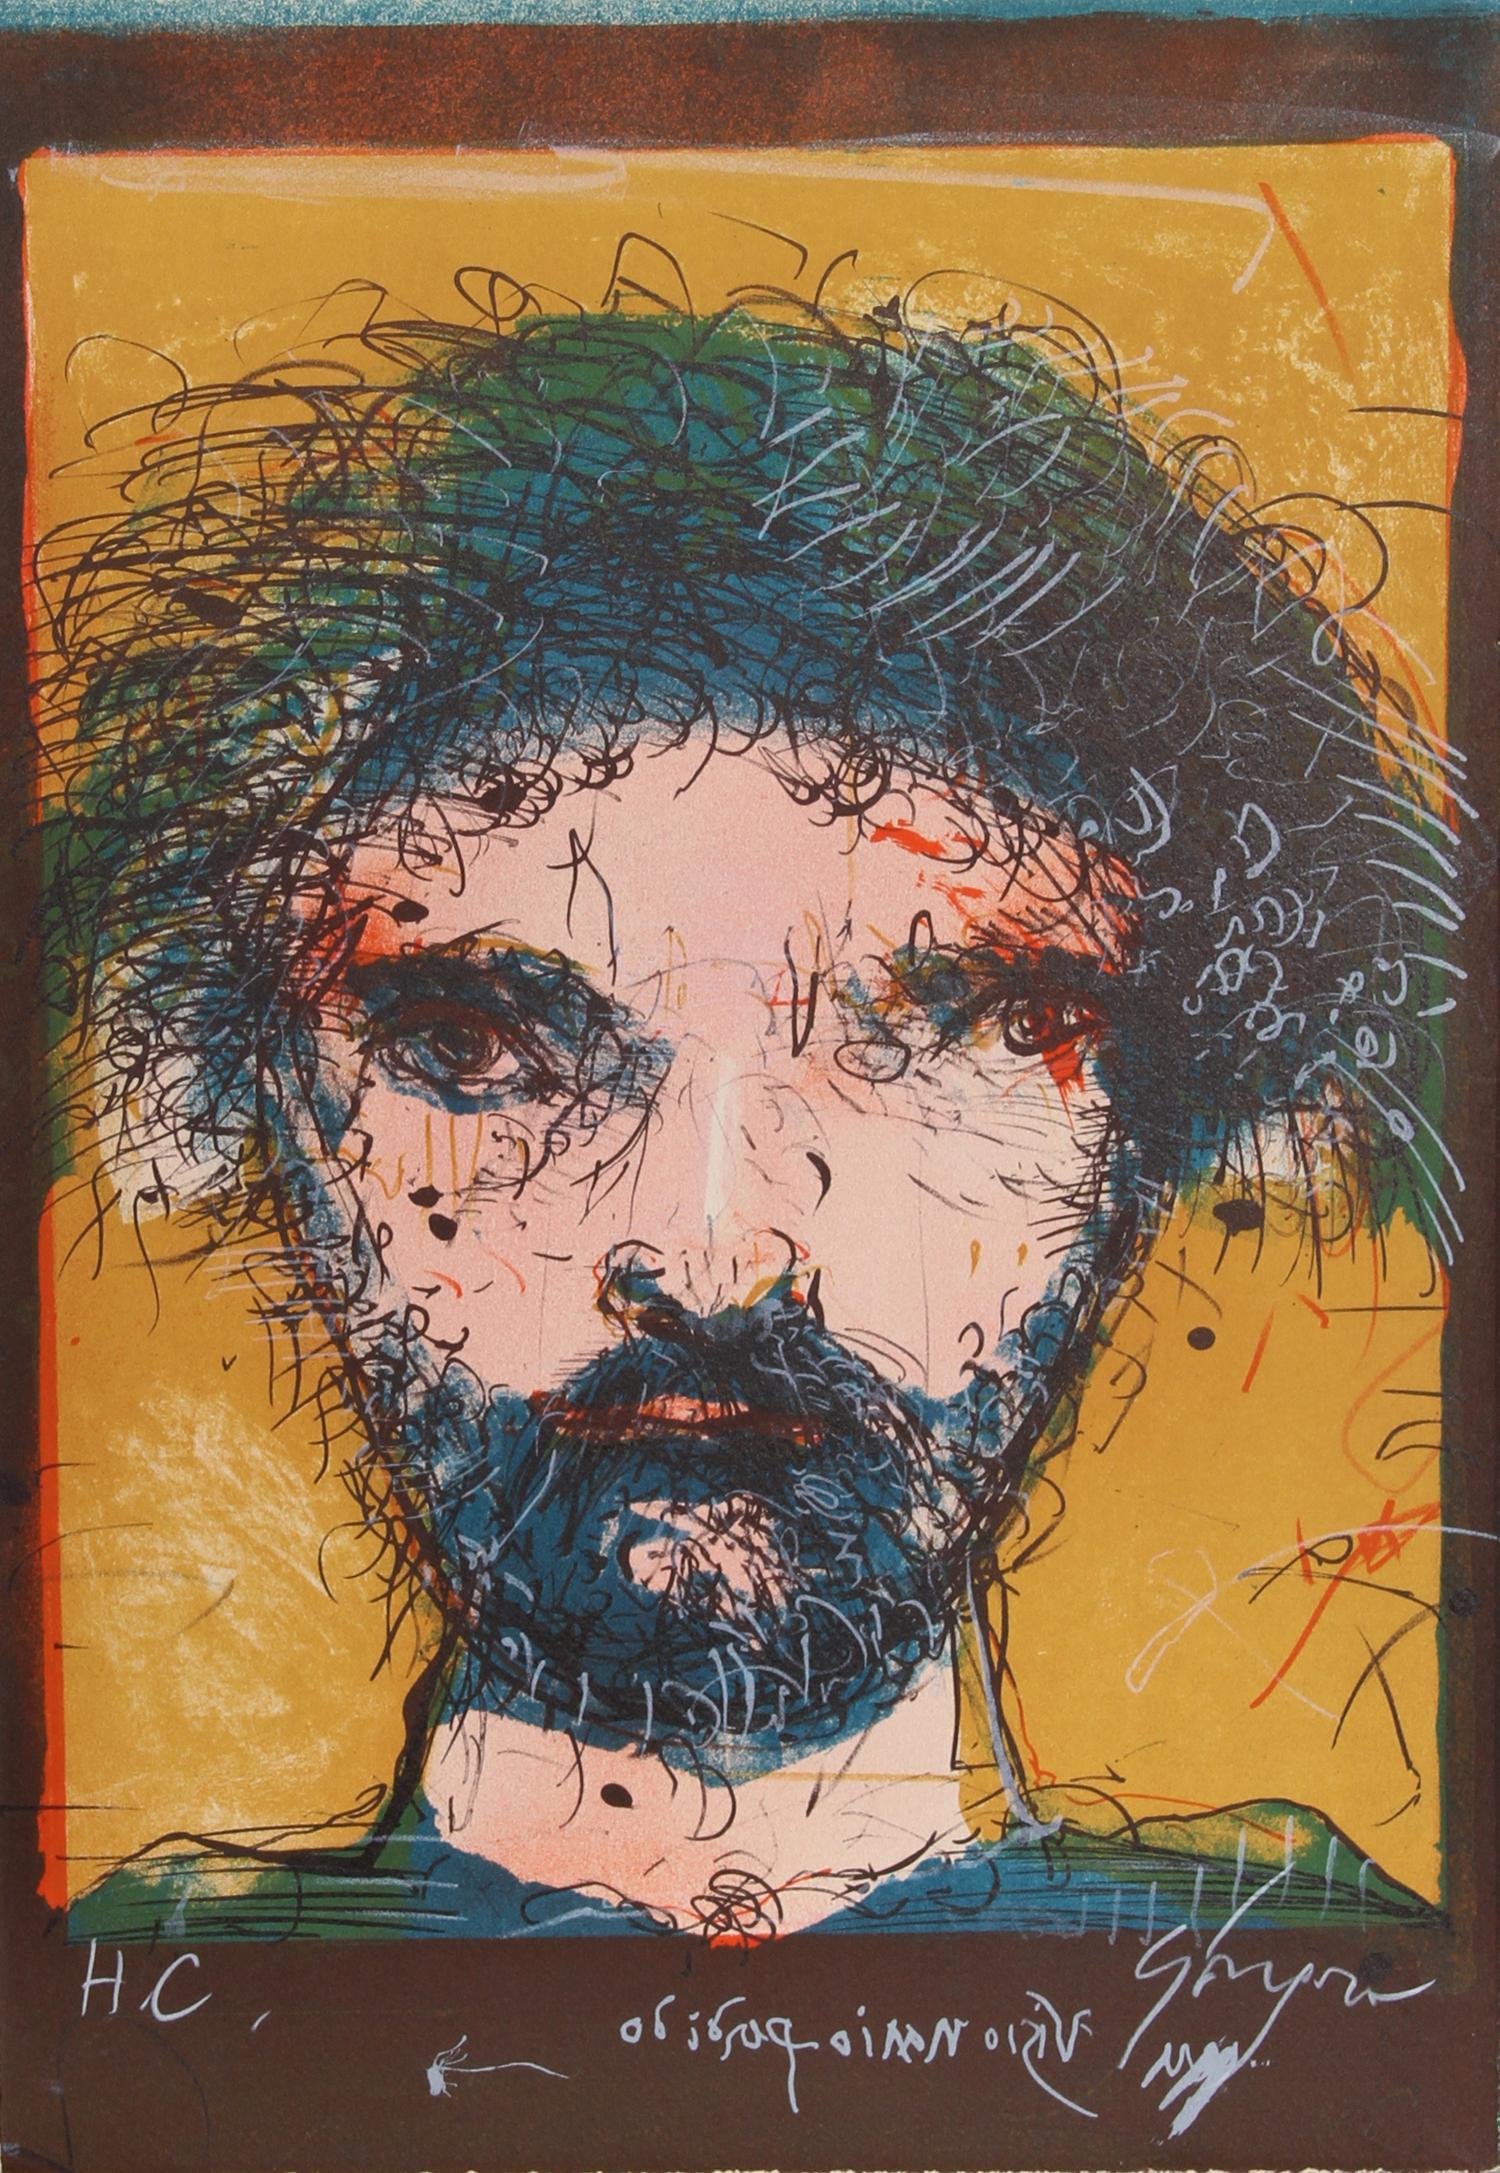 Artista: Leonel Gongora, Colombia (1932 - 1999)
Titolo: Ritratto di un uomo
Anno: circa 1979
Medio: Litografia, firmata a matita
Edizione: HC
Dimensioni: 17 x 12 pollici (43,18 cm x 30,48 cm)